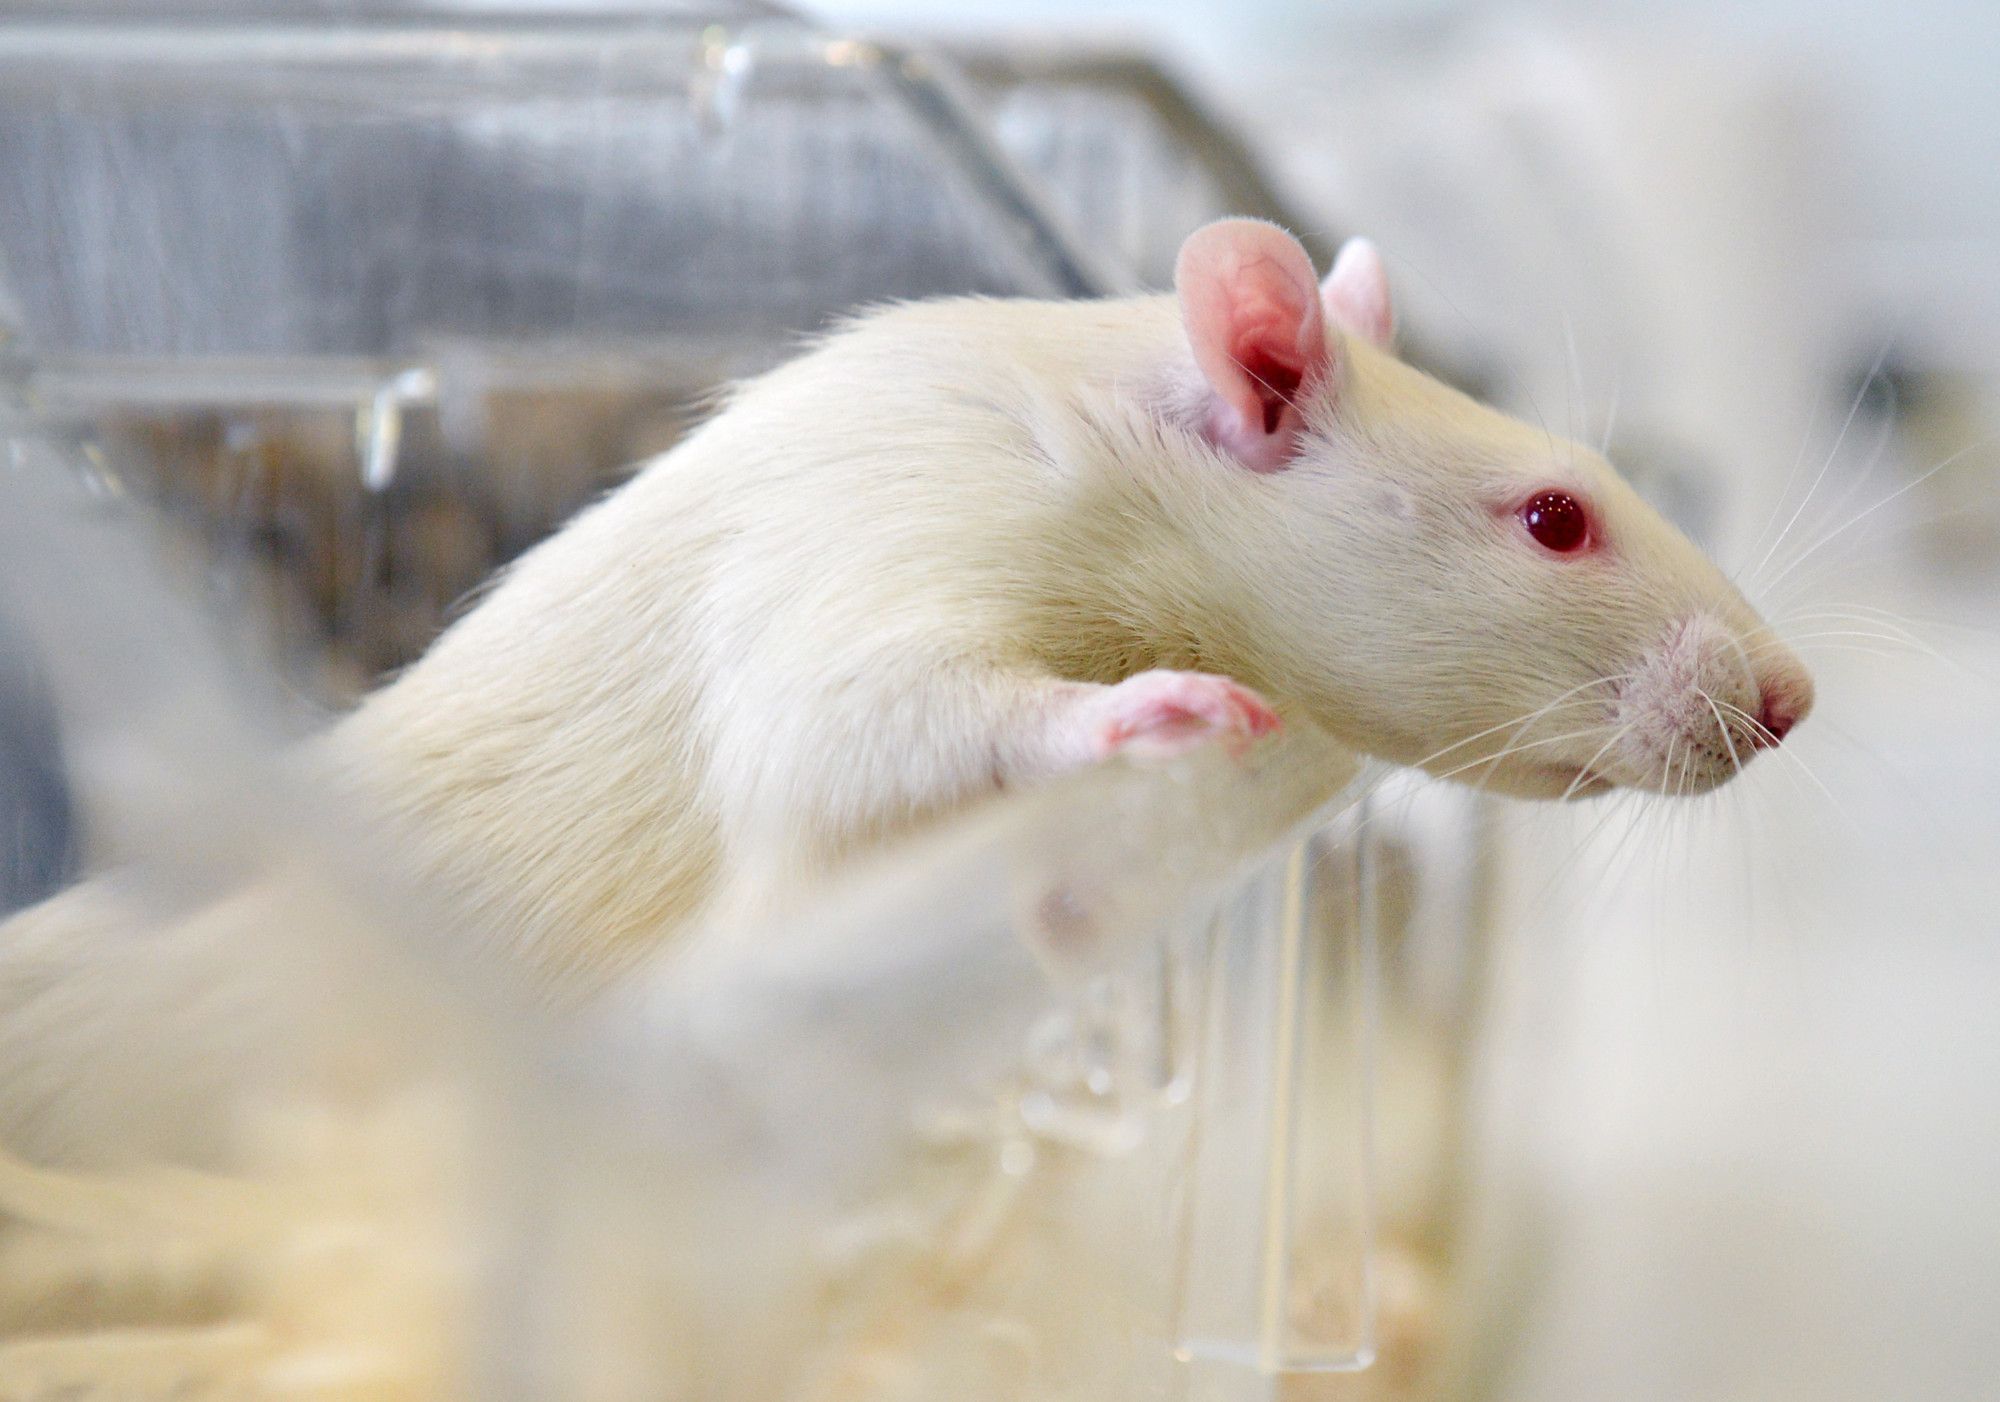 A patkányok is képesek felhasználni az epizodikus memóriájukat a problémamegoldásban